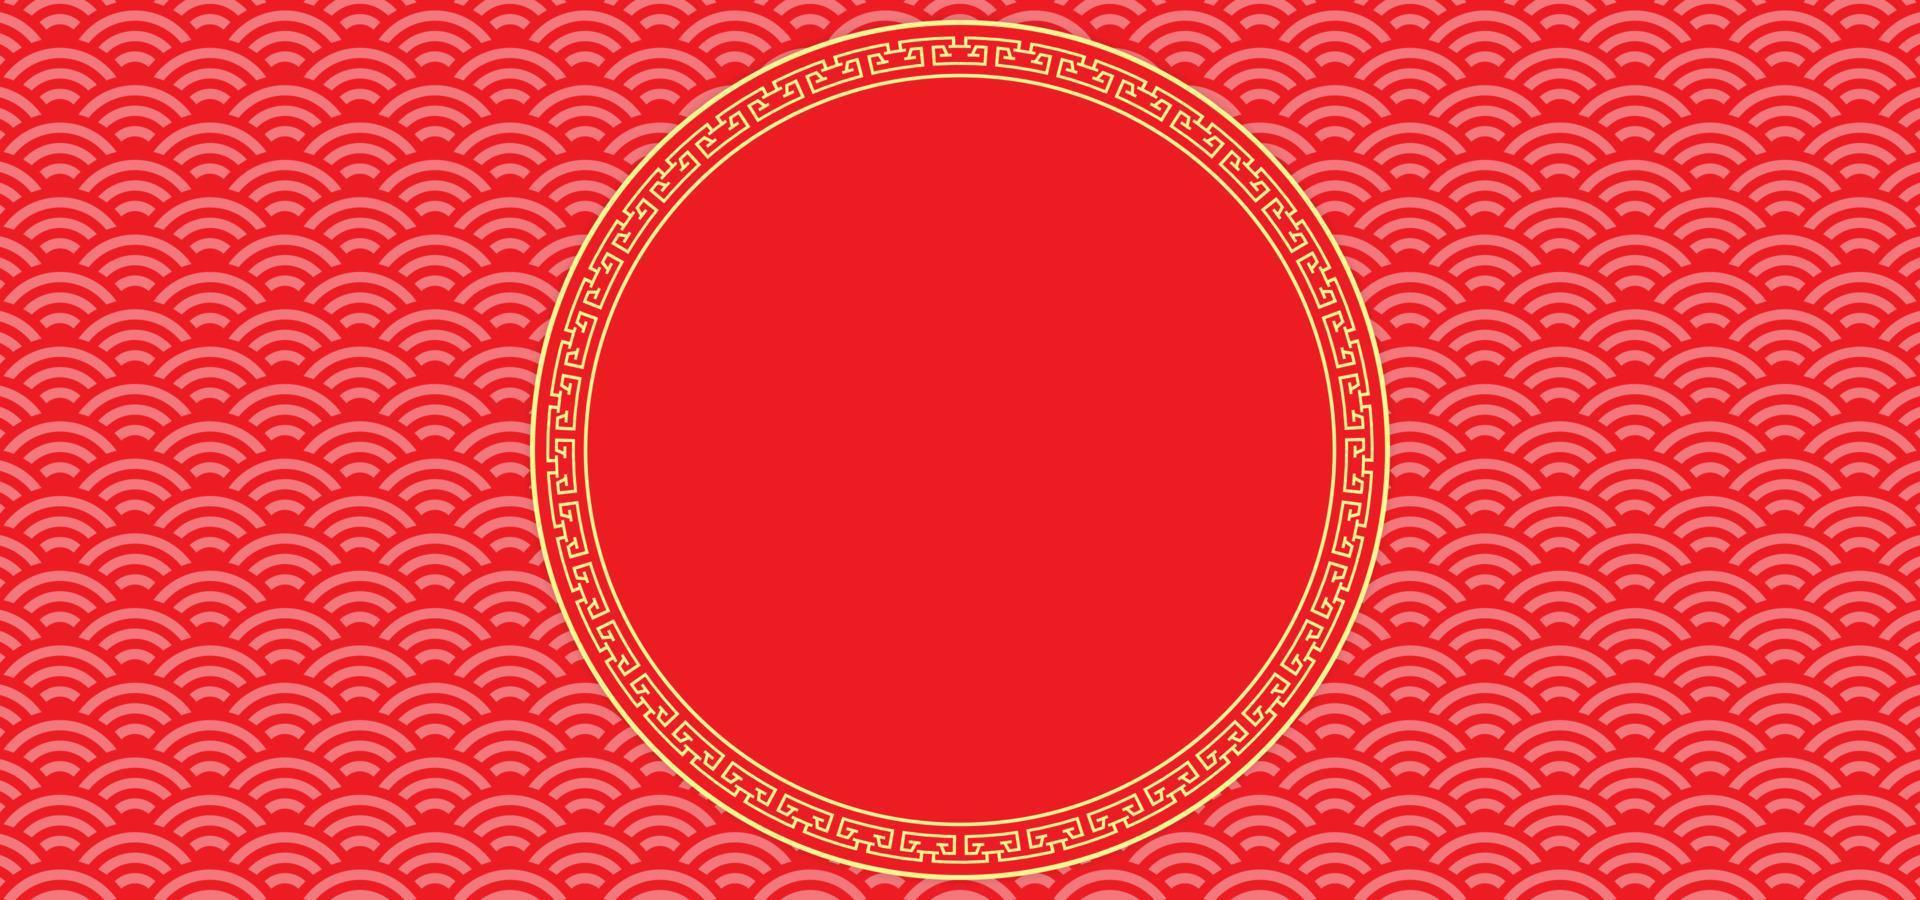 fond de nouvel an chinois avec un espace vide pour le texte. thème de fond rouge et or avec texture de motif et ornement. illustration vectorielle vecteur